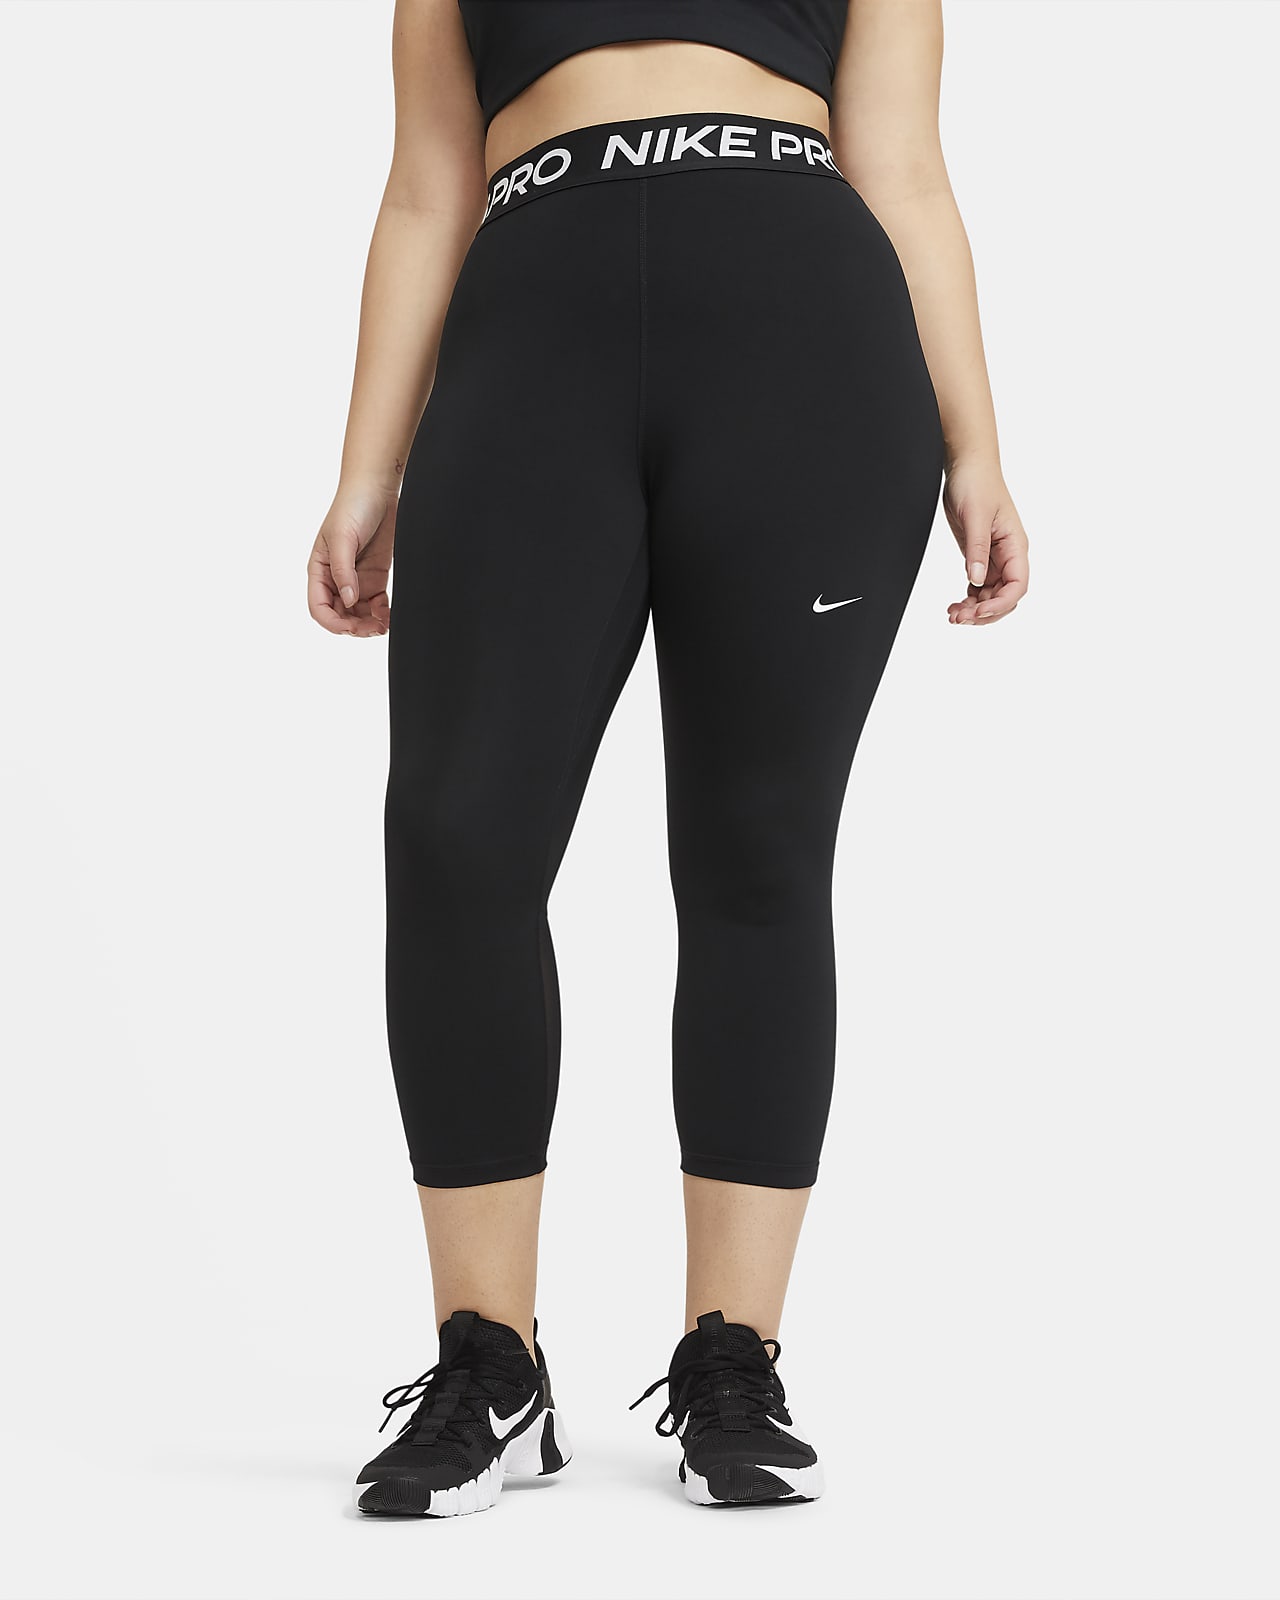 Werkwijze Wind Afsnijden Nike Pro Women's Mid-Rise Crop Leggings (Plus Size). Nike.com